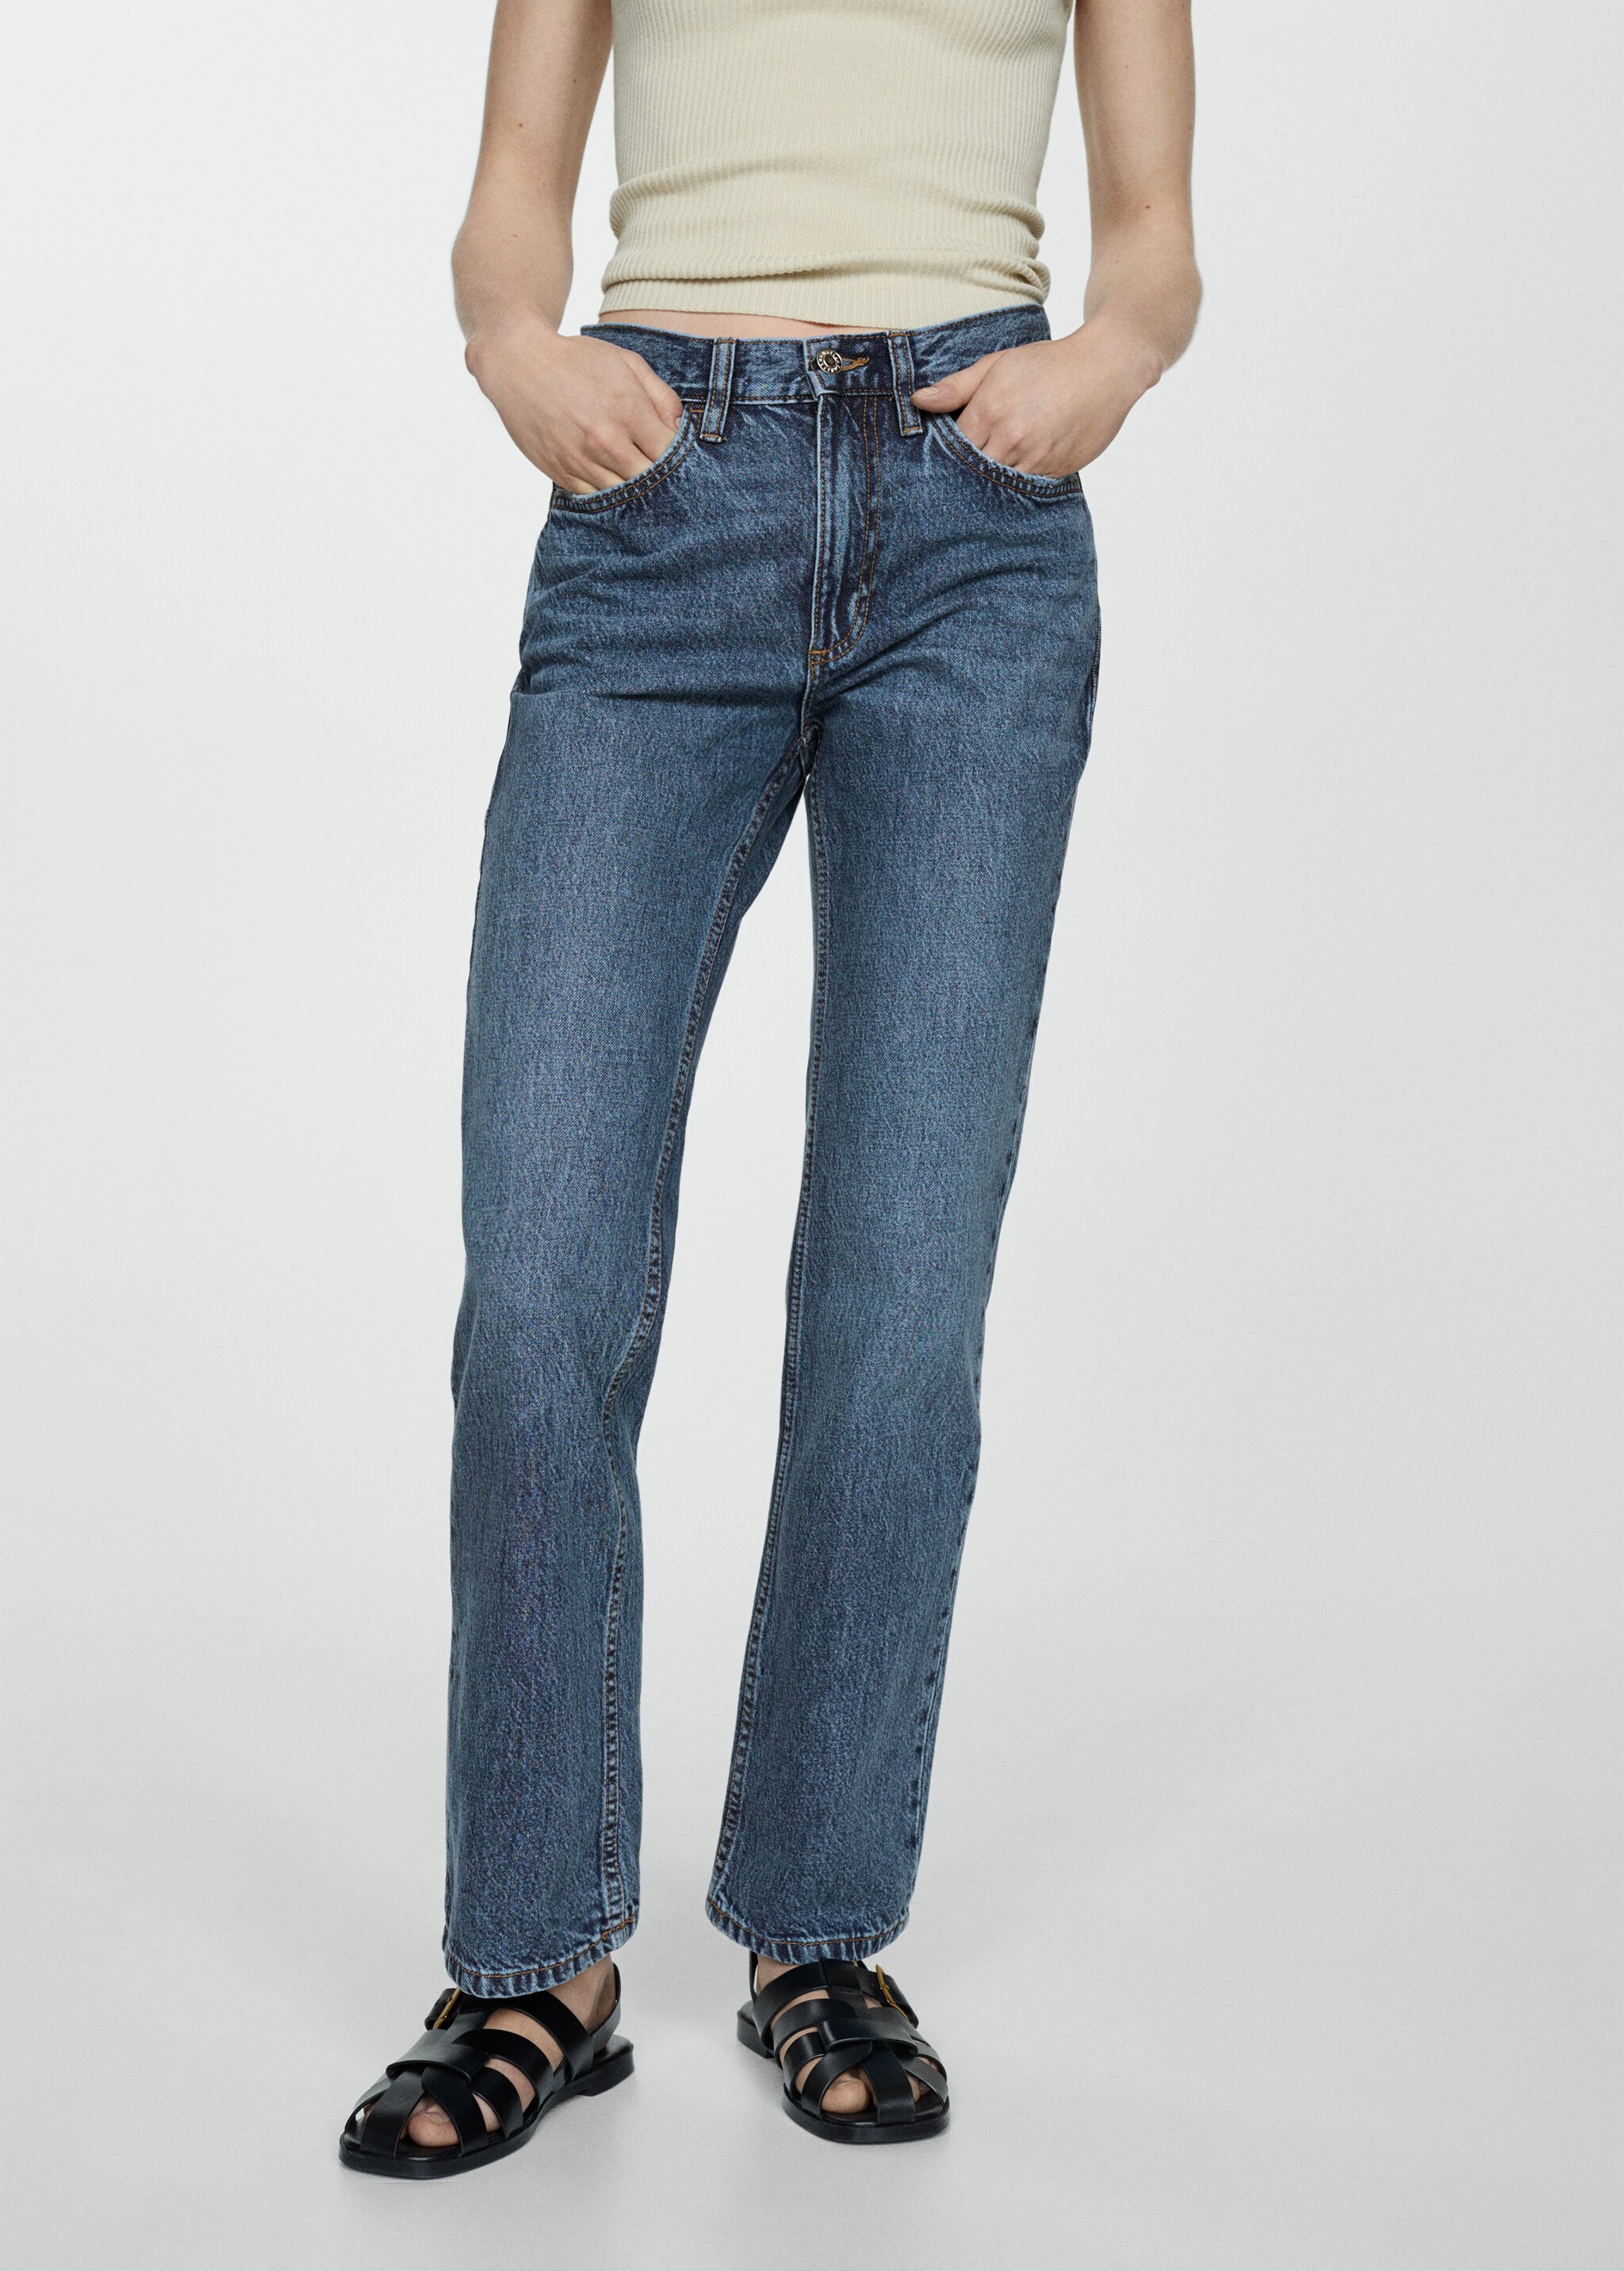 Прямые джинсы с посадкой на талии - Средний план